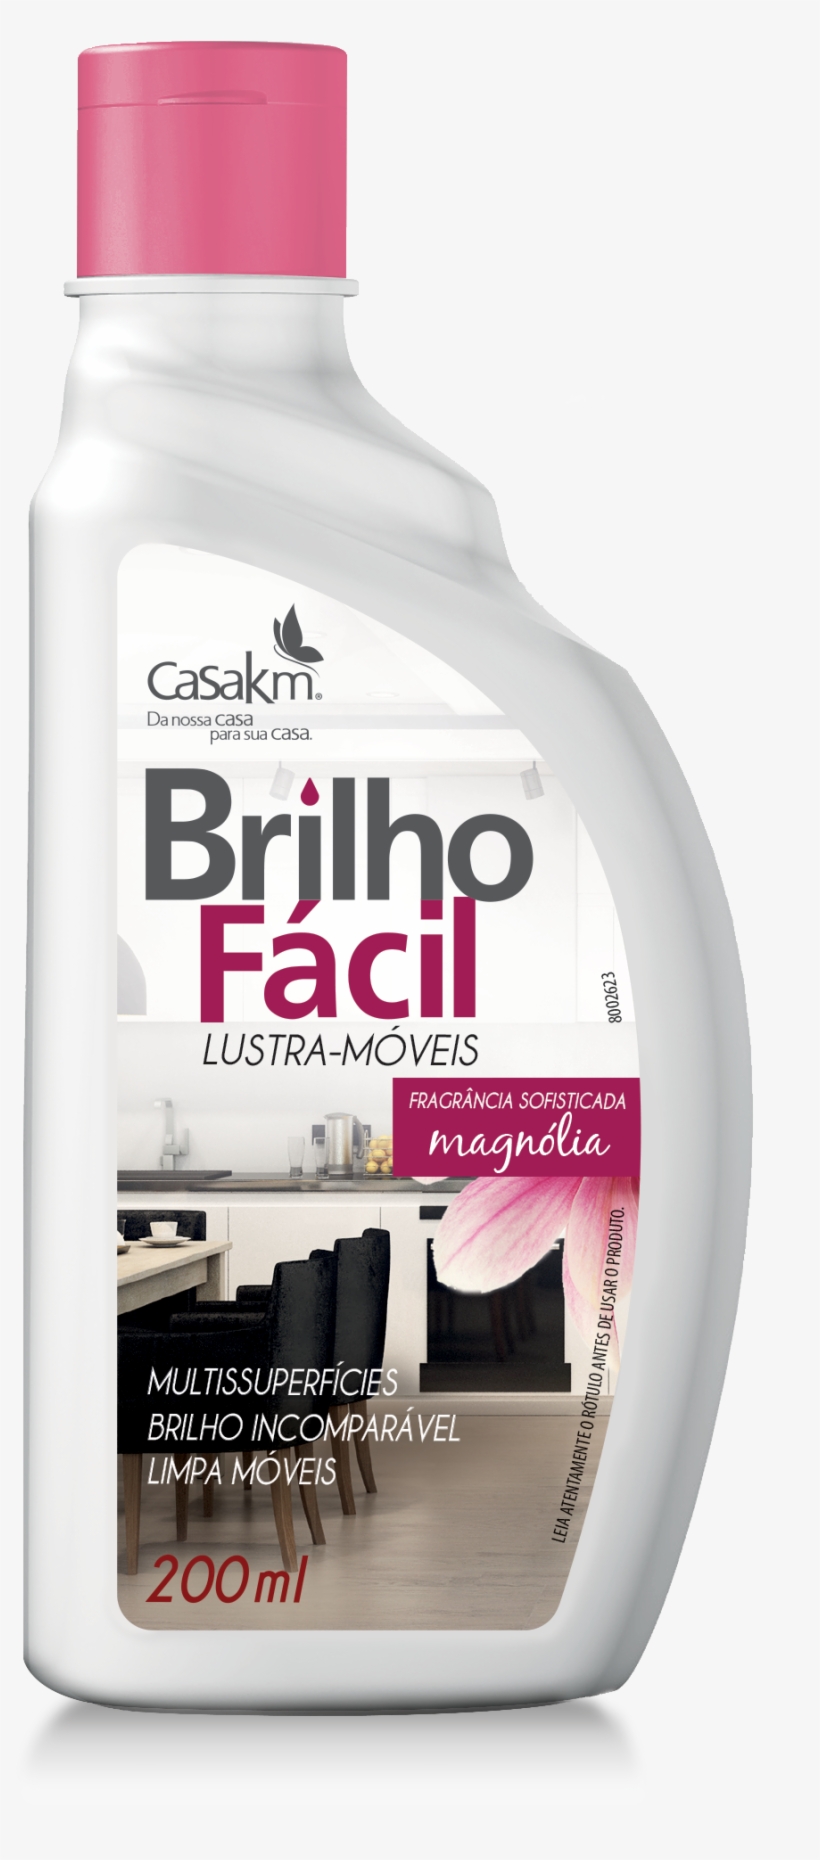 Brilho Fácil Lustra-móveis Multissuperfícies - Lustra Moveis Brilho Facil 200ml Magnólia, transparent png #3423265